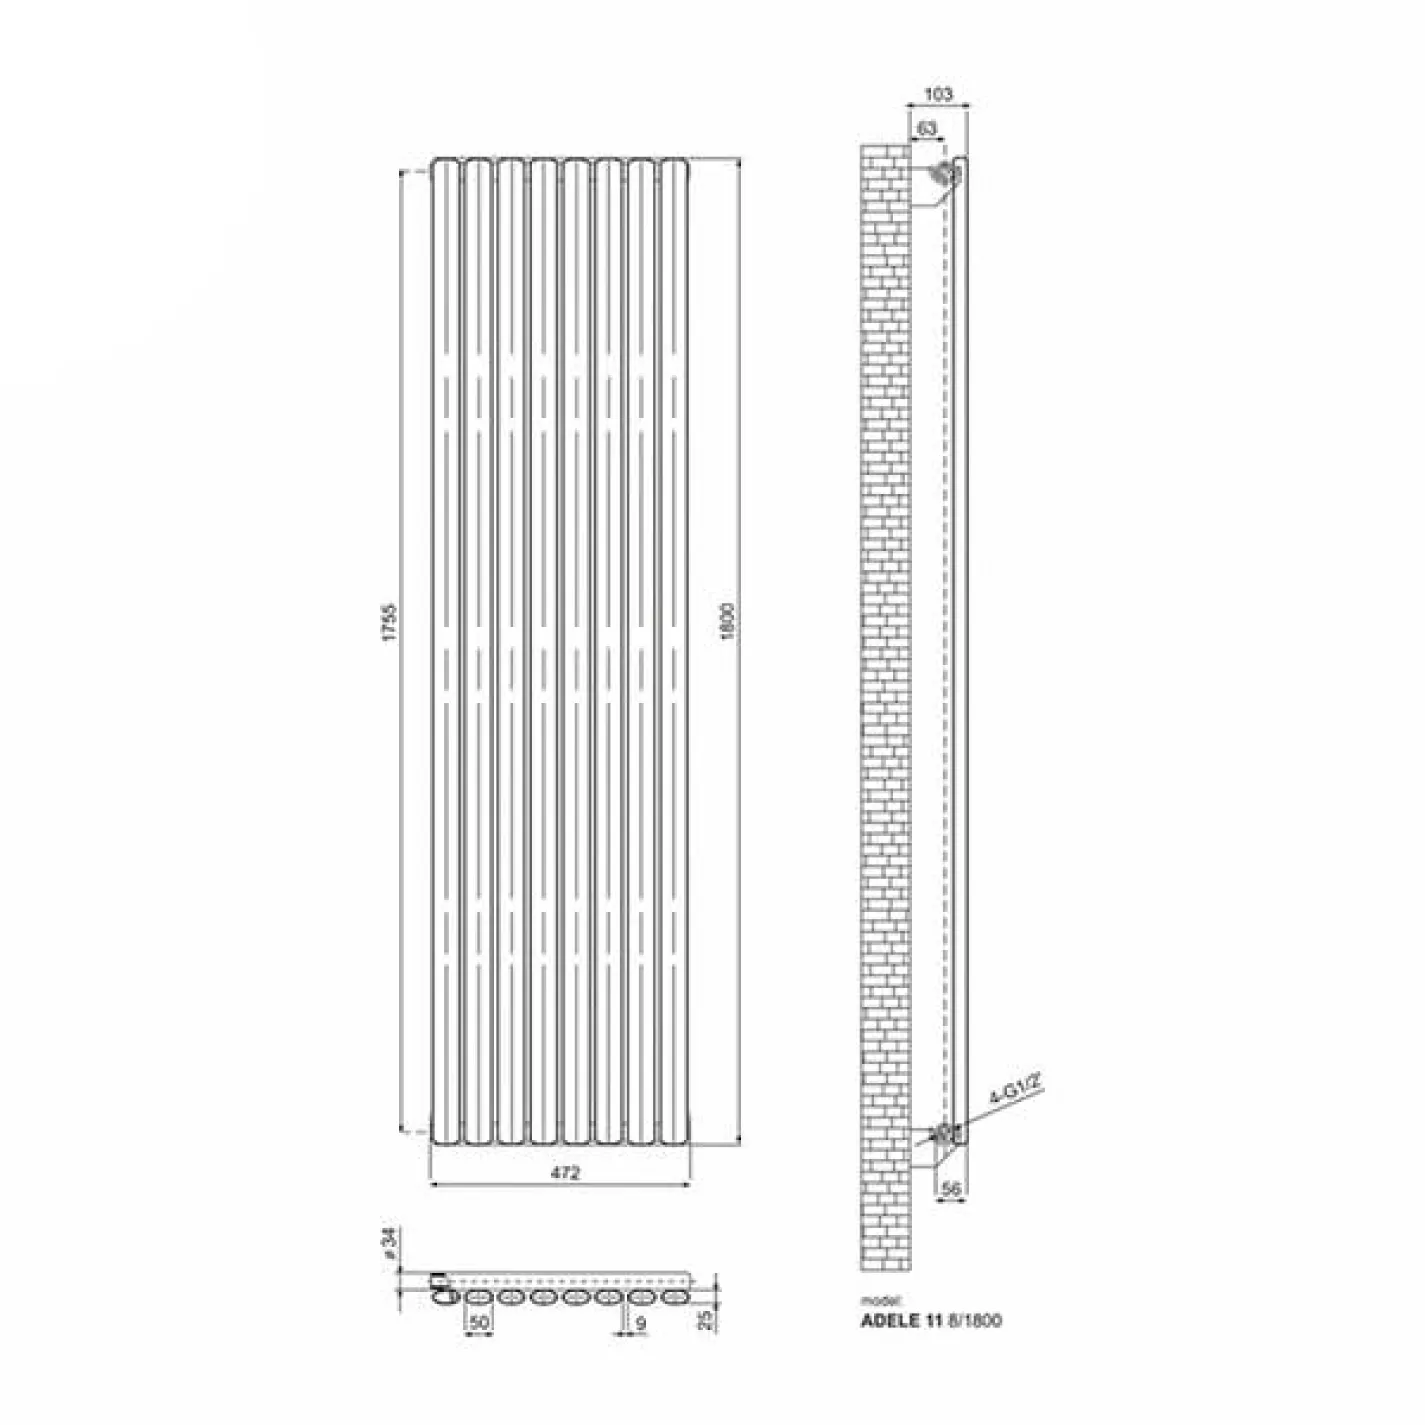 Трубчастый радиатор Ideale Adele 1 колонна 8 секций 1500x472 антрацит - Фото 3